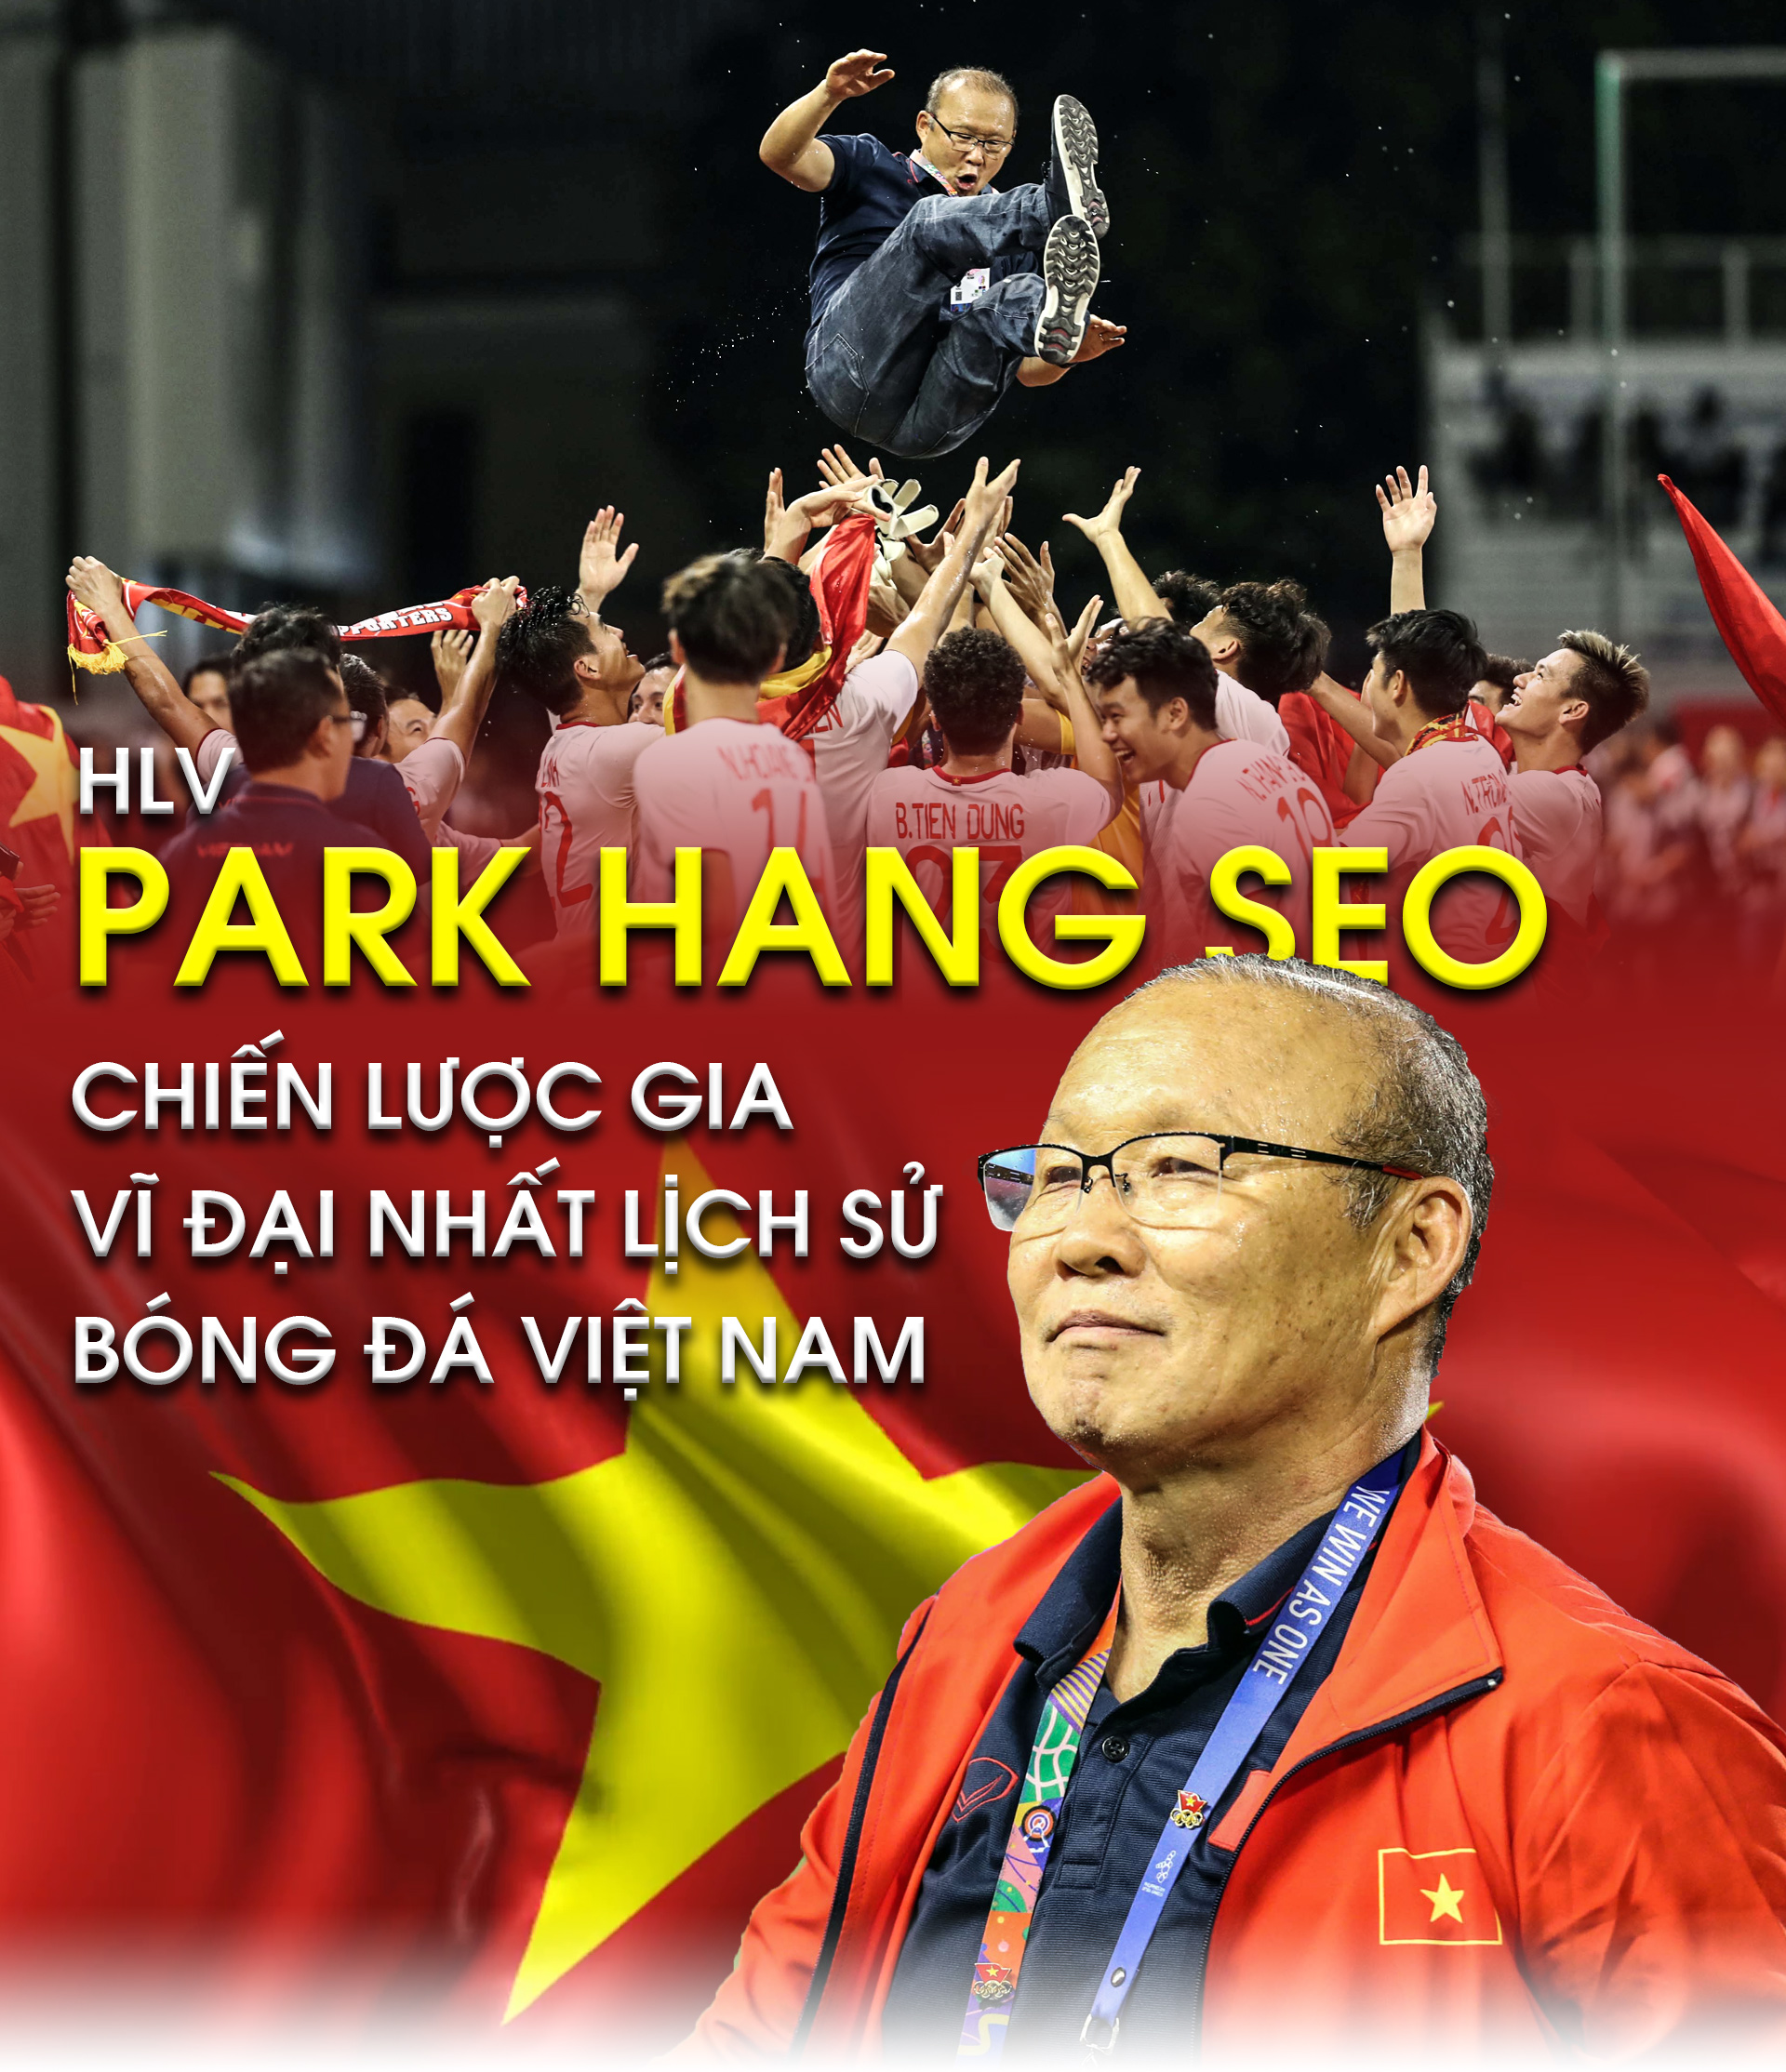 “Người đặc biệt” Park Hang Seo – Chiến lược gia vĩ đại nhất lịch sử bóng đá Việt Nam - 1